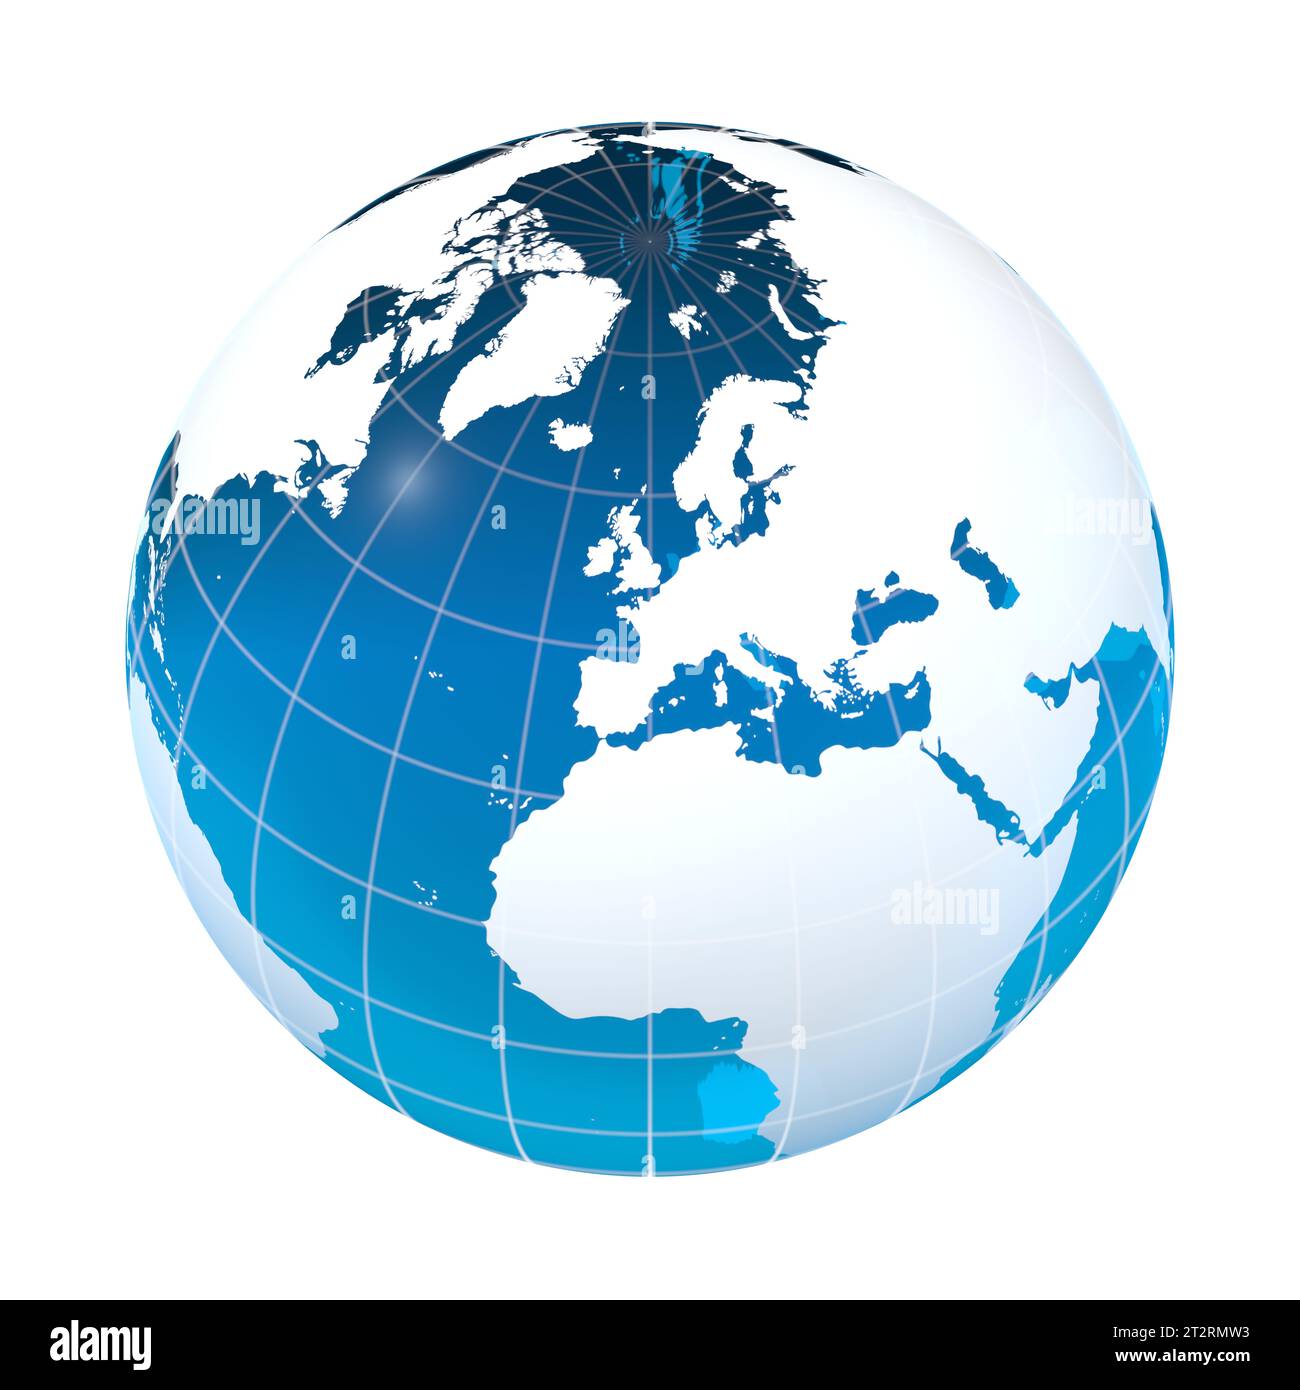 Royaume-Uni, Espagne, Europe, globe terrestre, carte du monde Banque D'Images